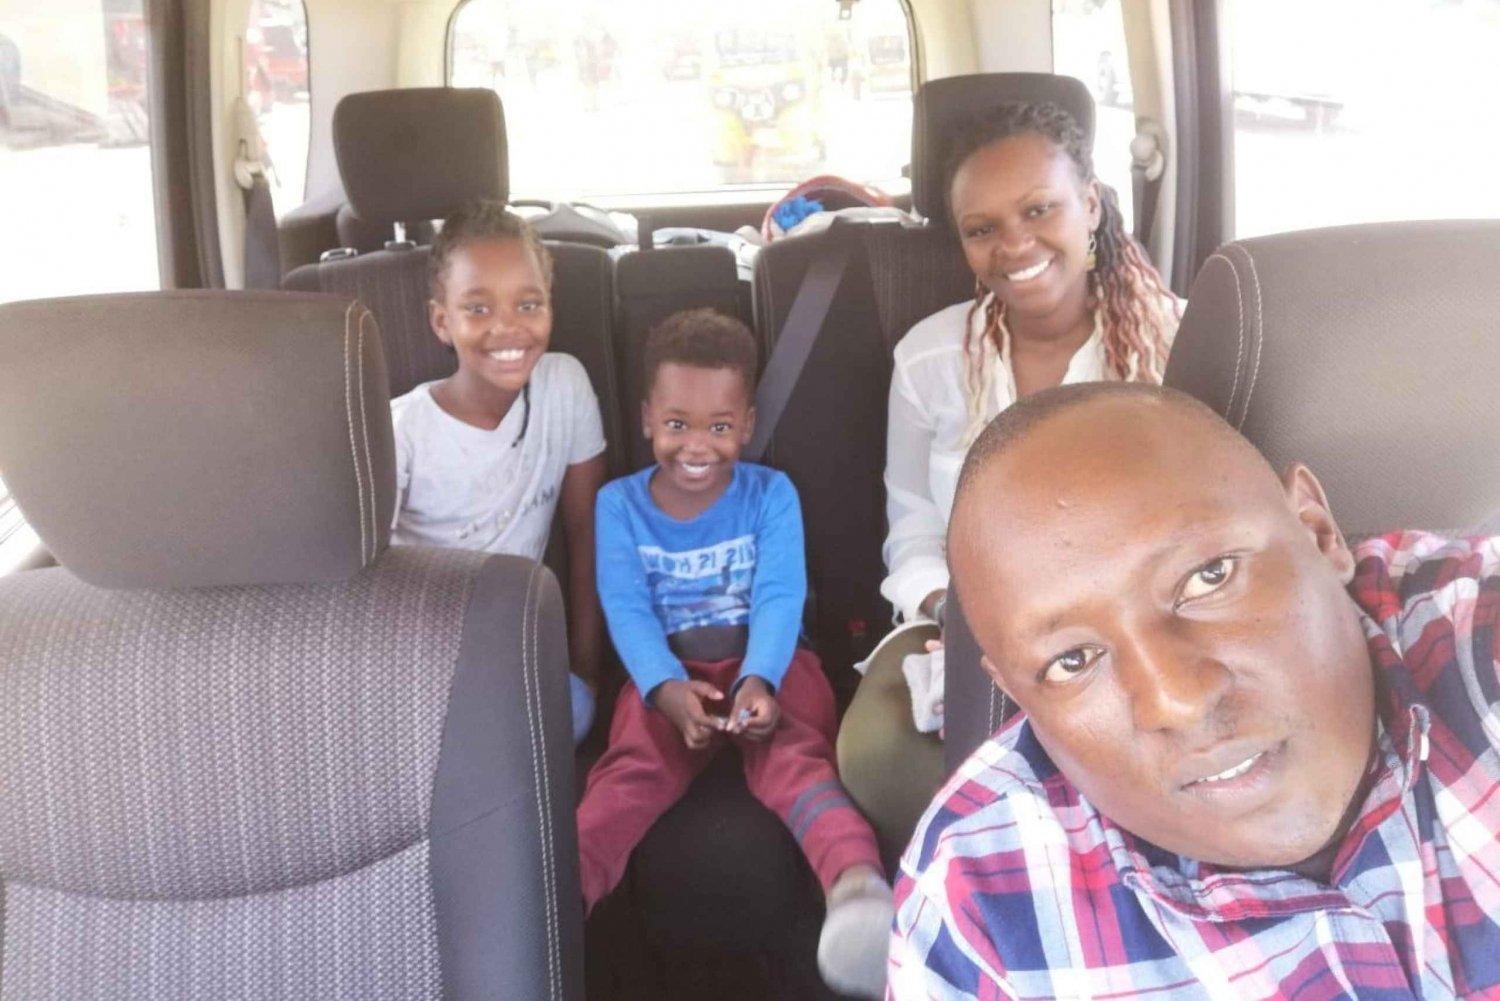 Vom Flughafen Mombasa: Diani-Transfer in einem Minivan (5 Personen)